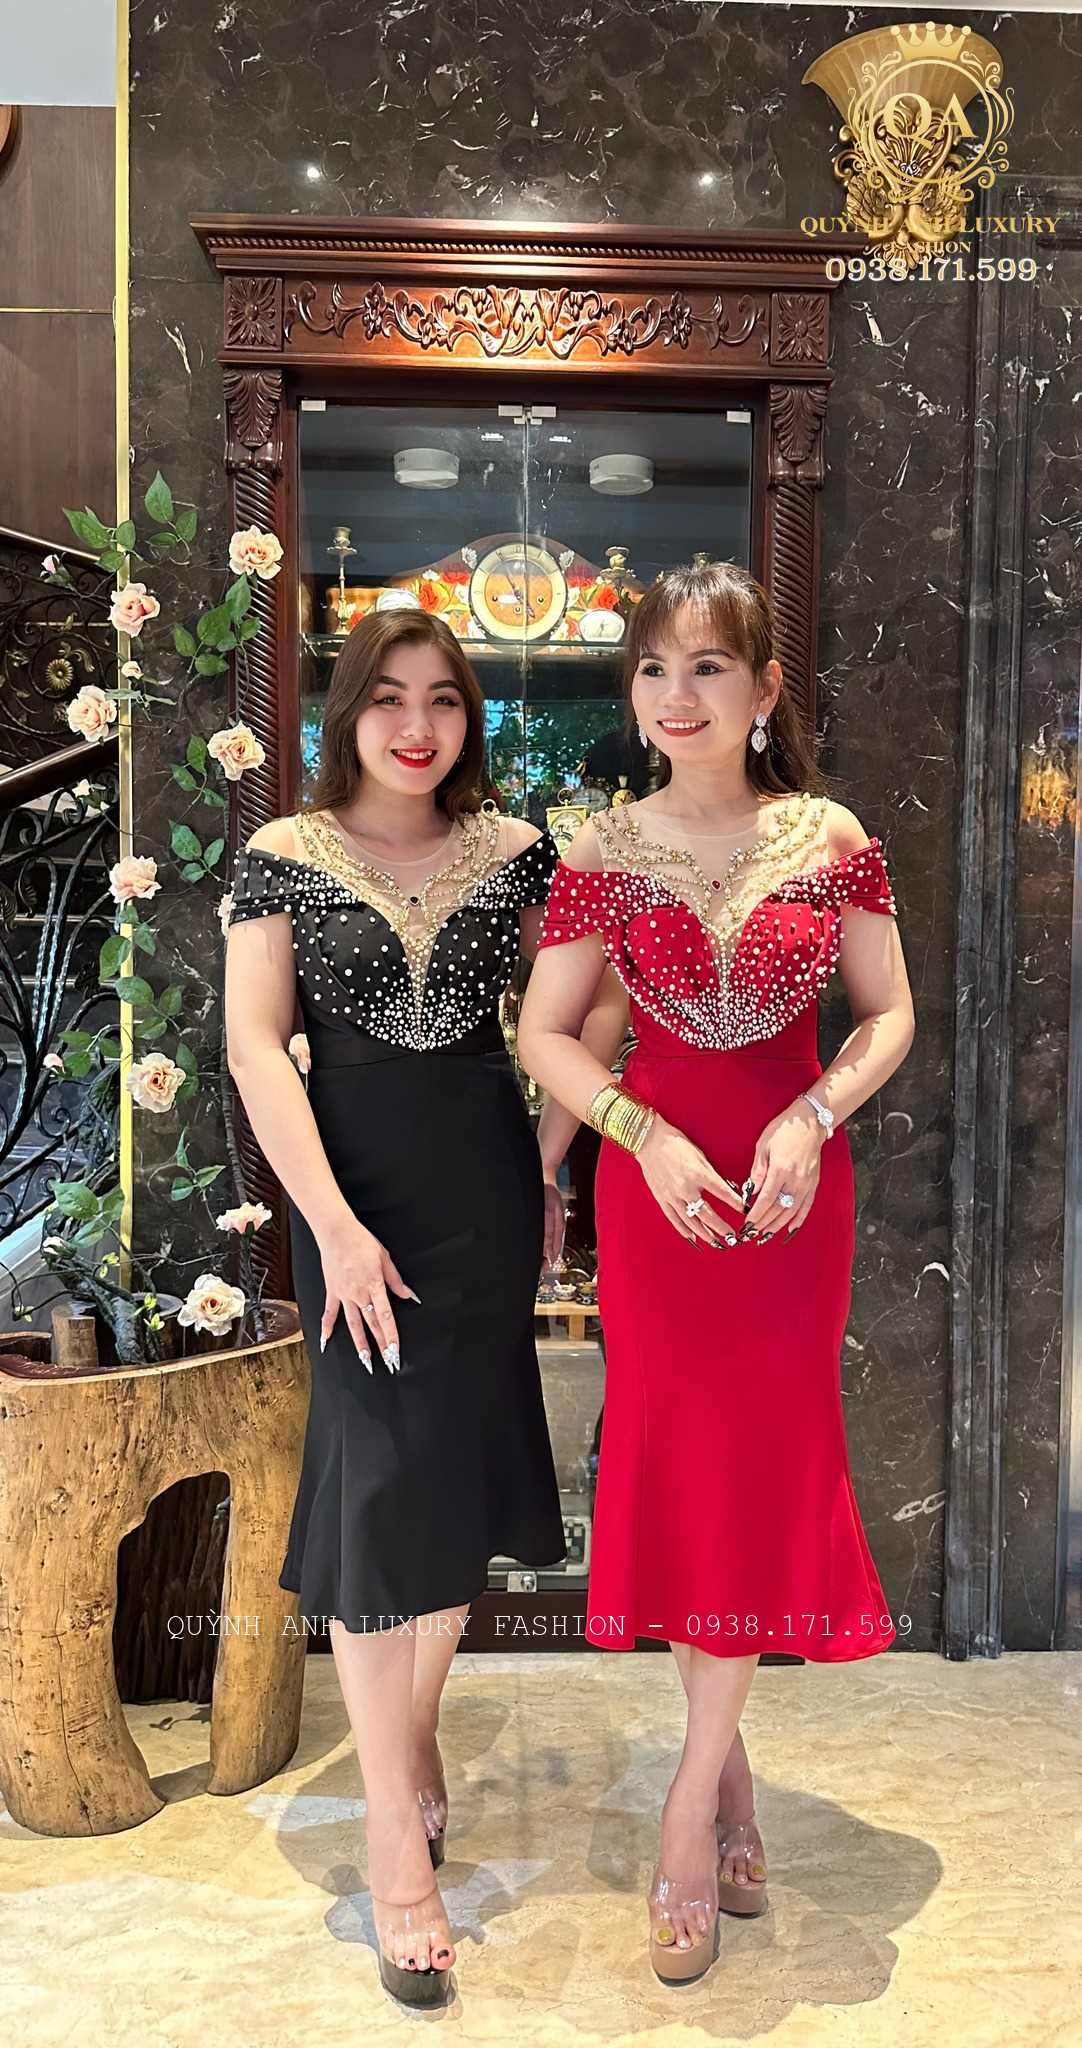 Đầm dạ hội trung niên, đầm đi tiệc trung niên của Quỳnh Anh Luxury Fashion